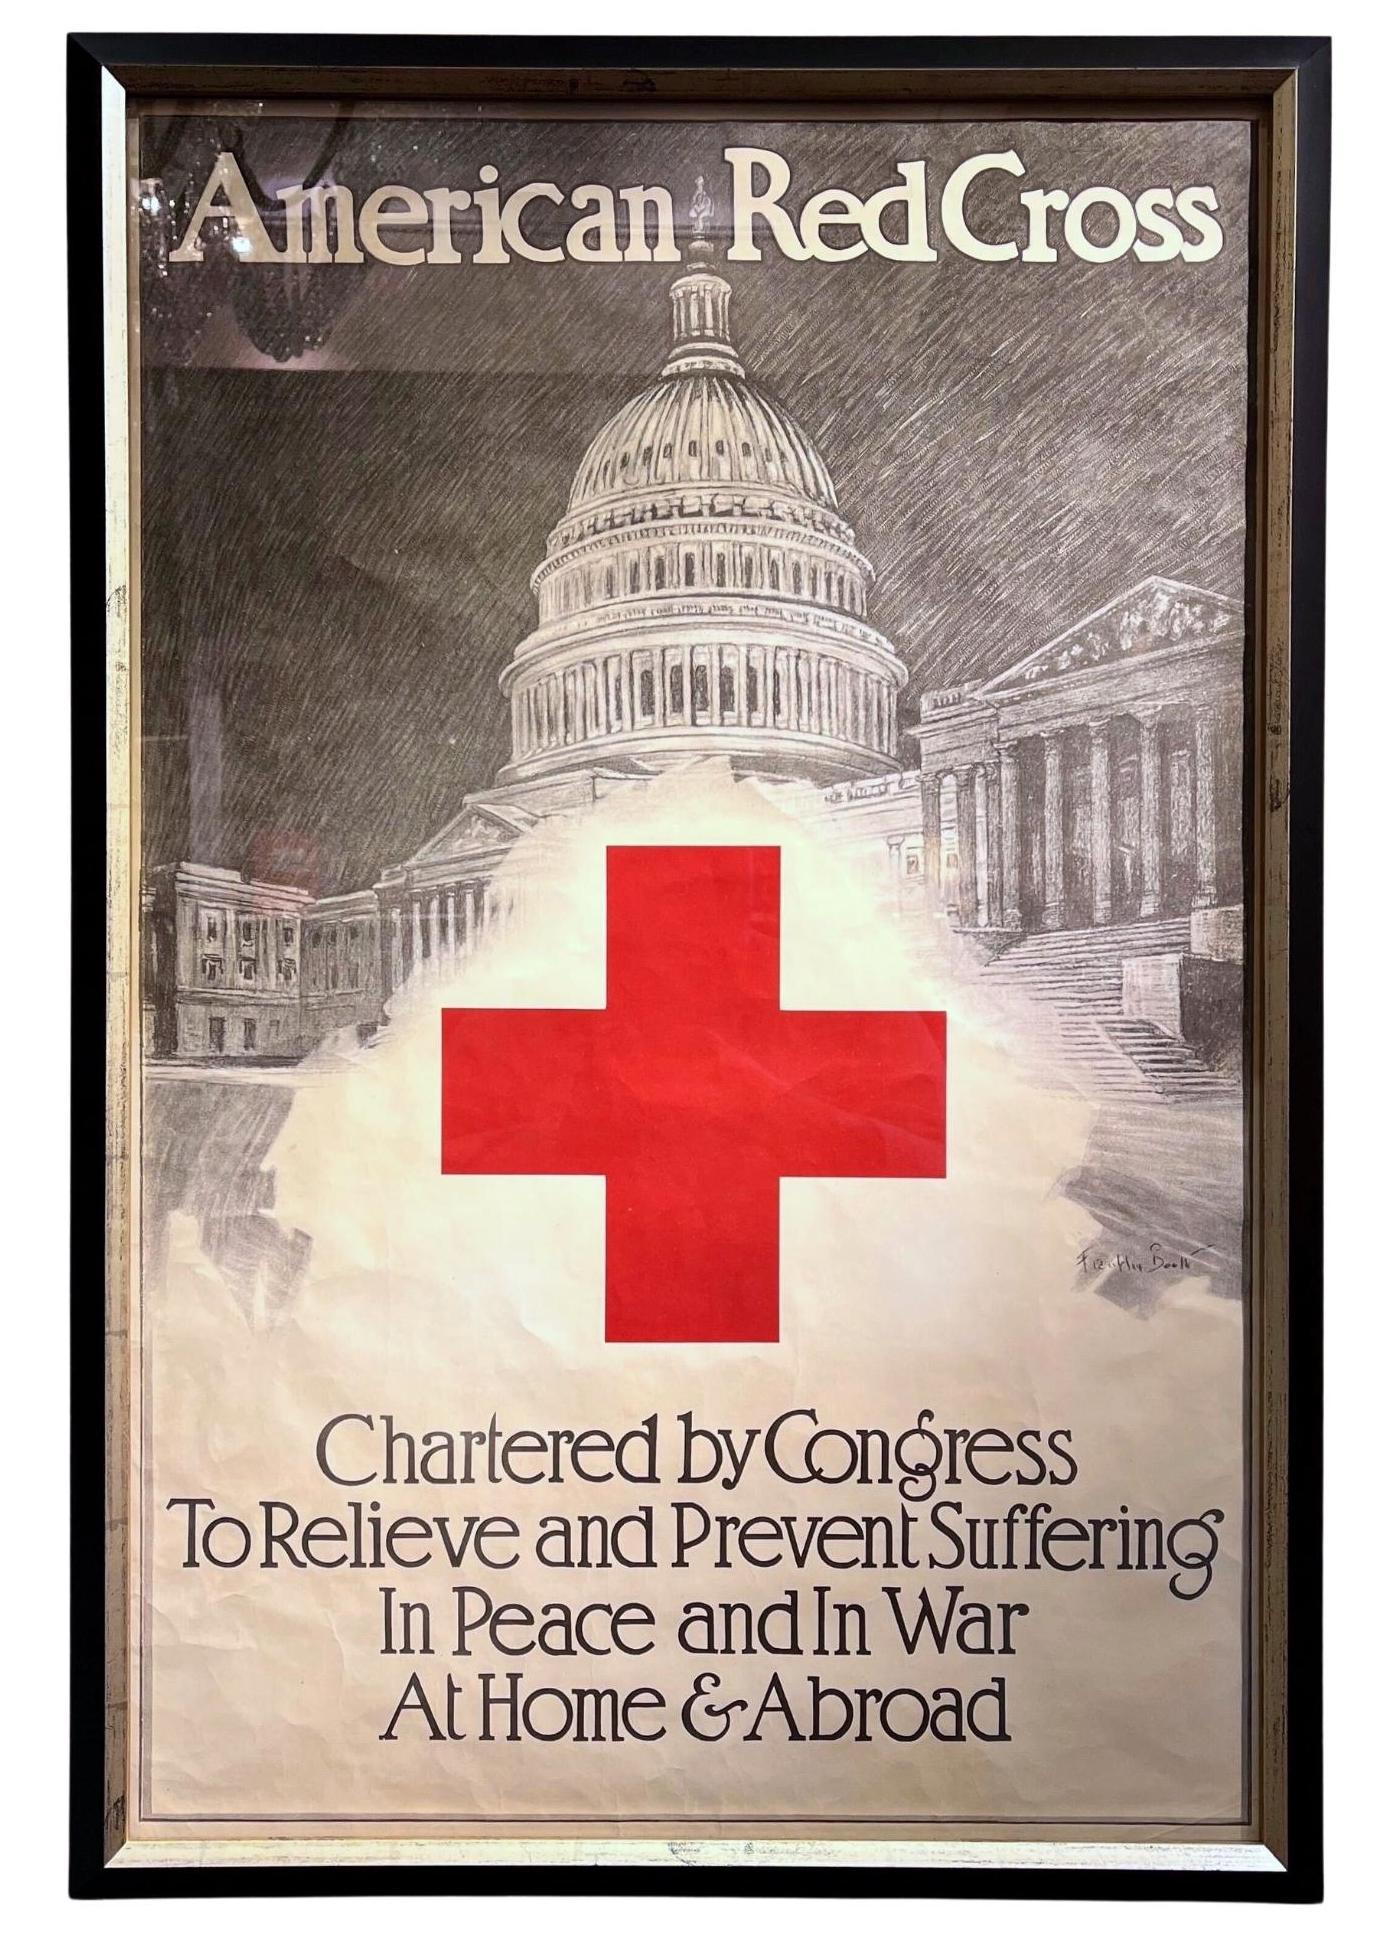 The American Red Cross War Effort